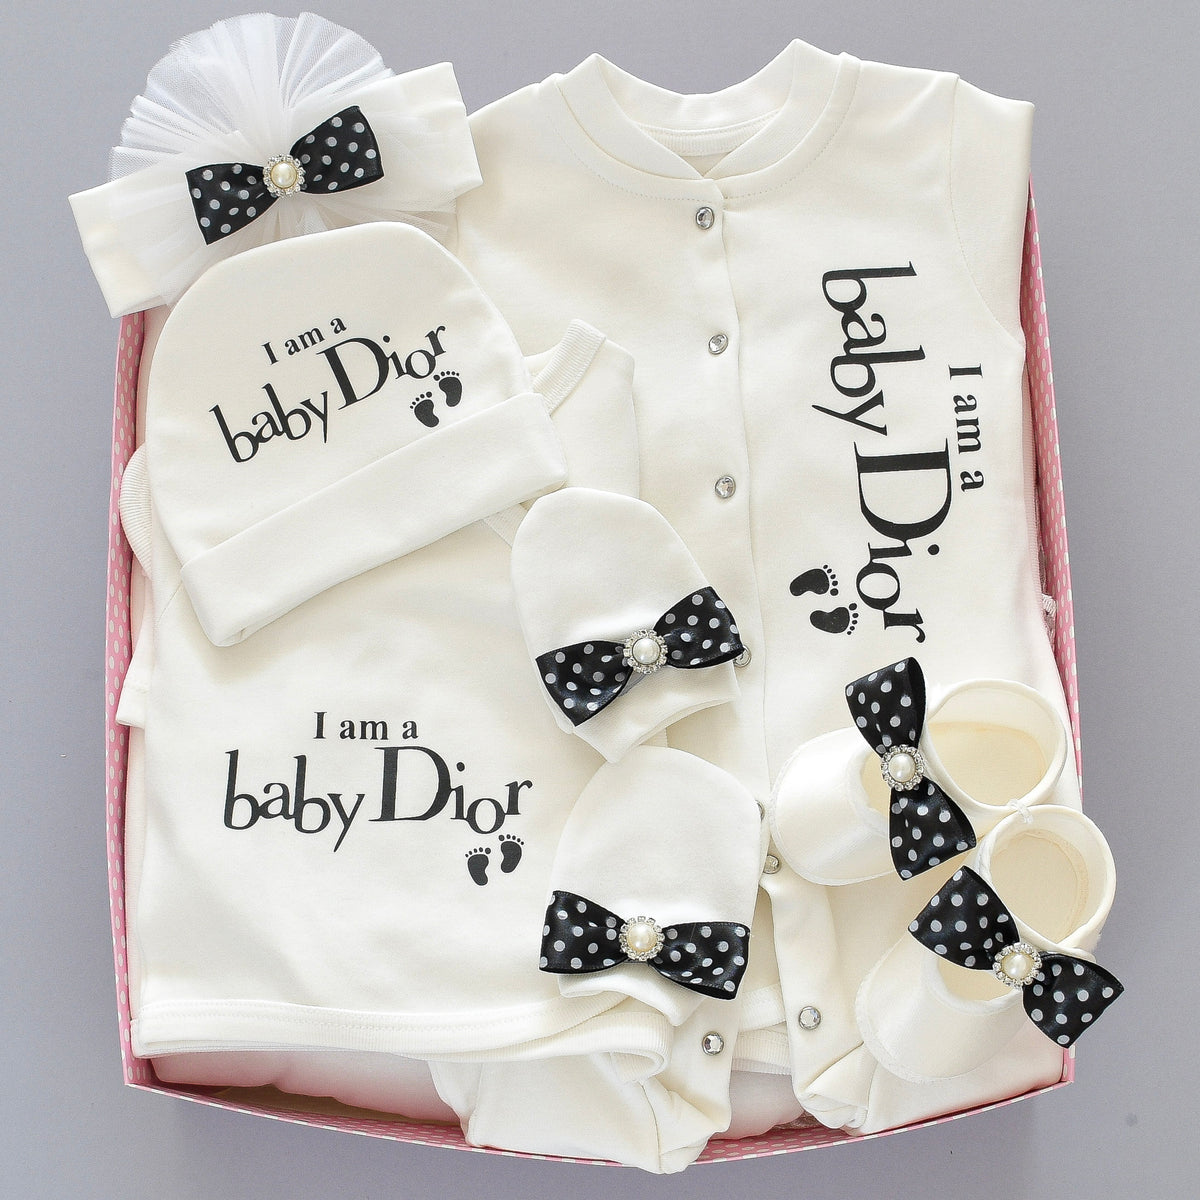 Baby Dior Inspired Newborn Baby Set – Tianoor, 53% OFF